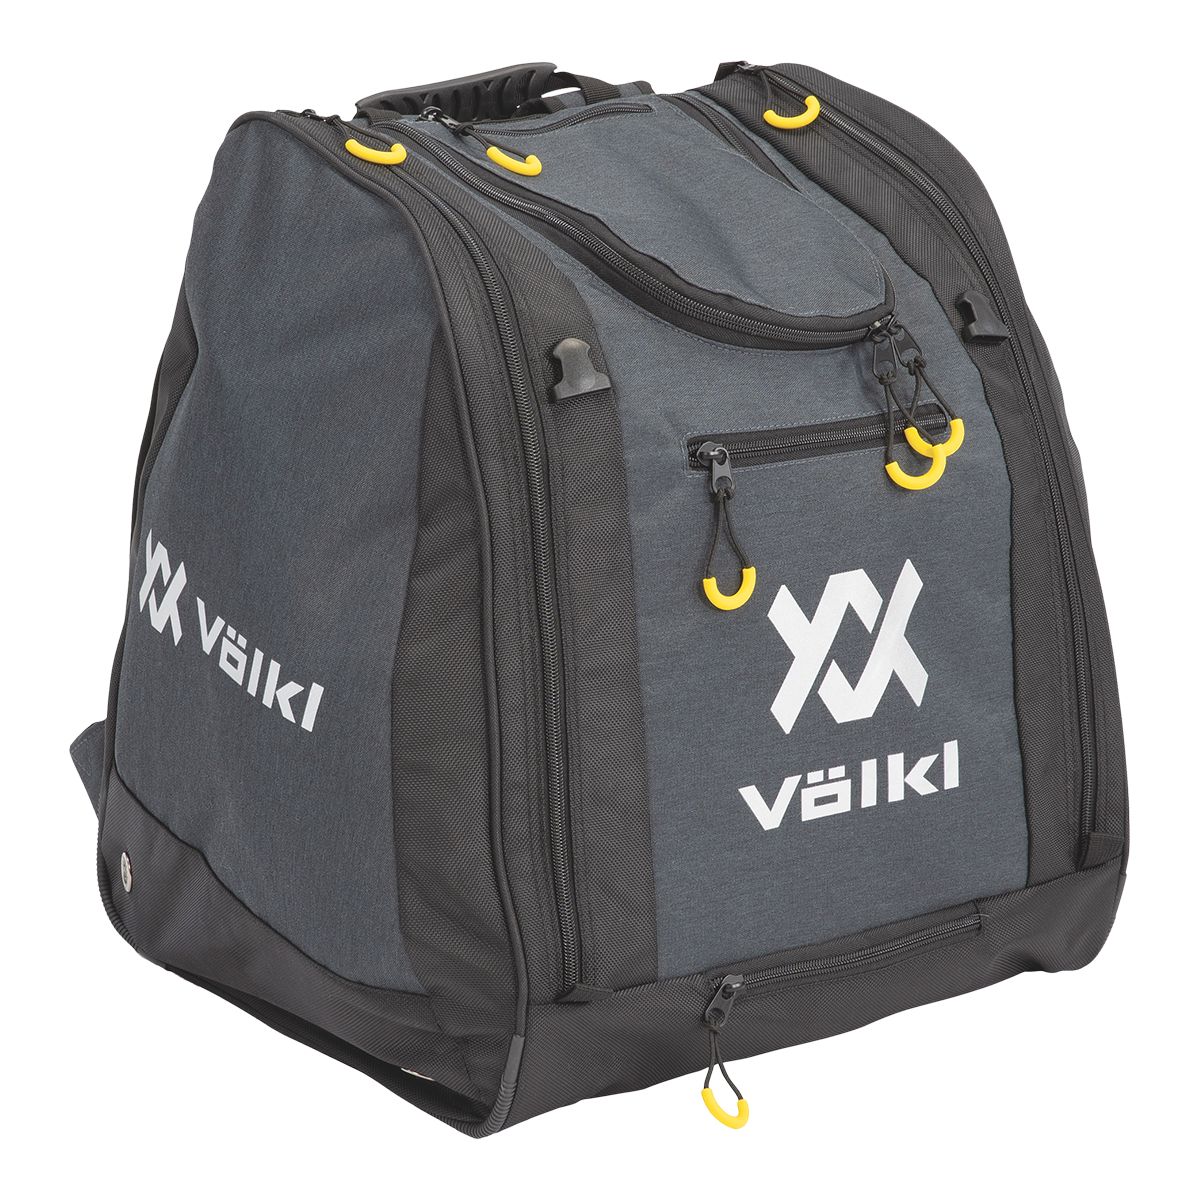 Volkl Deluxe Ski Boot Bag